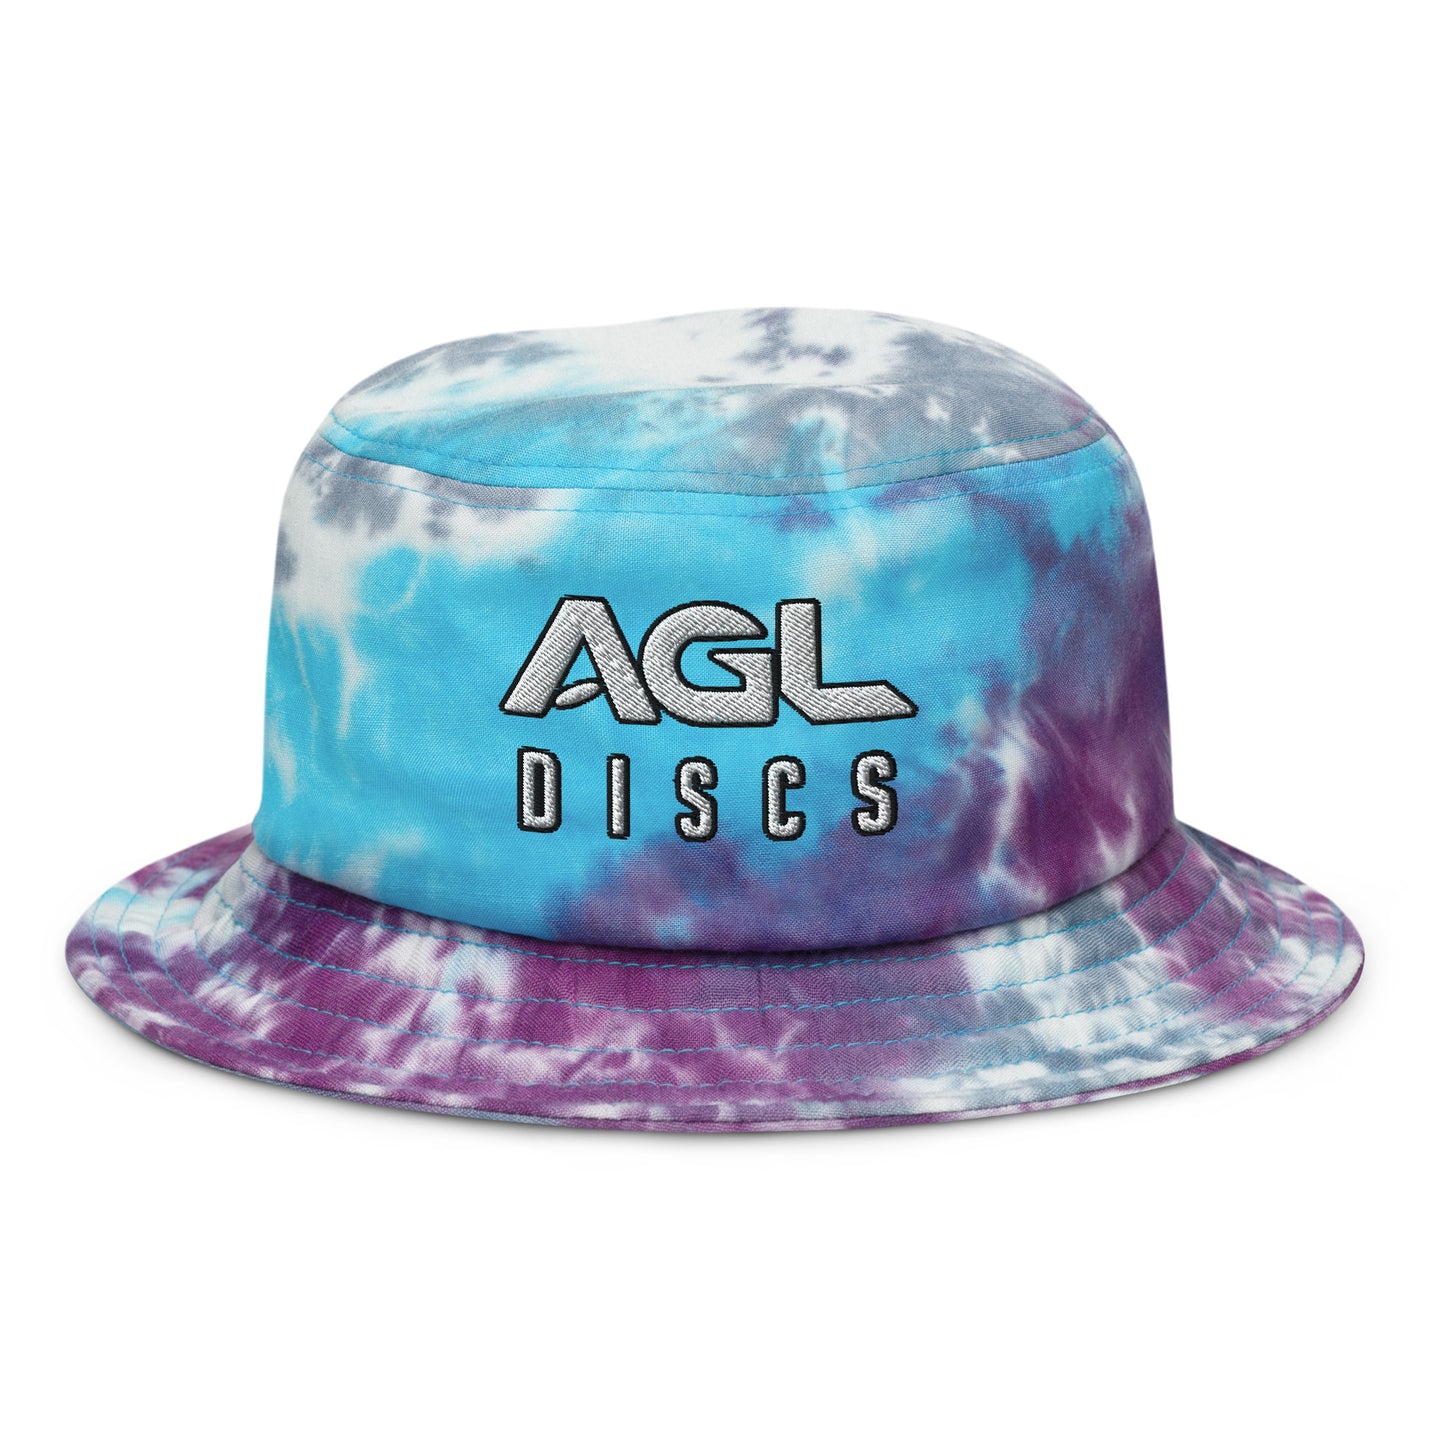 AGL Discs - Tie-dye bucket hat